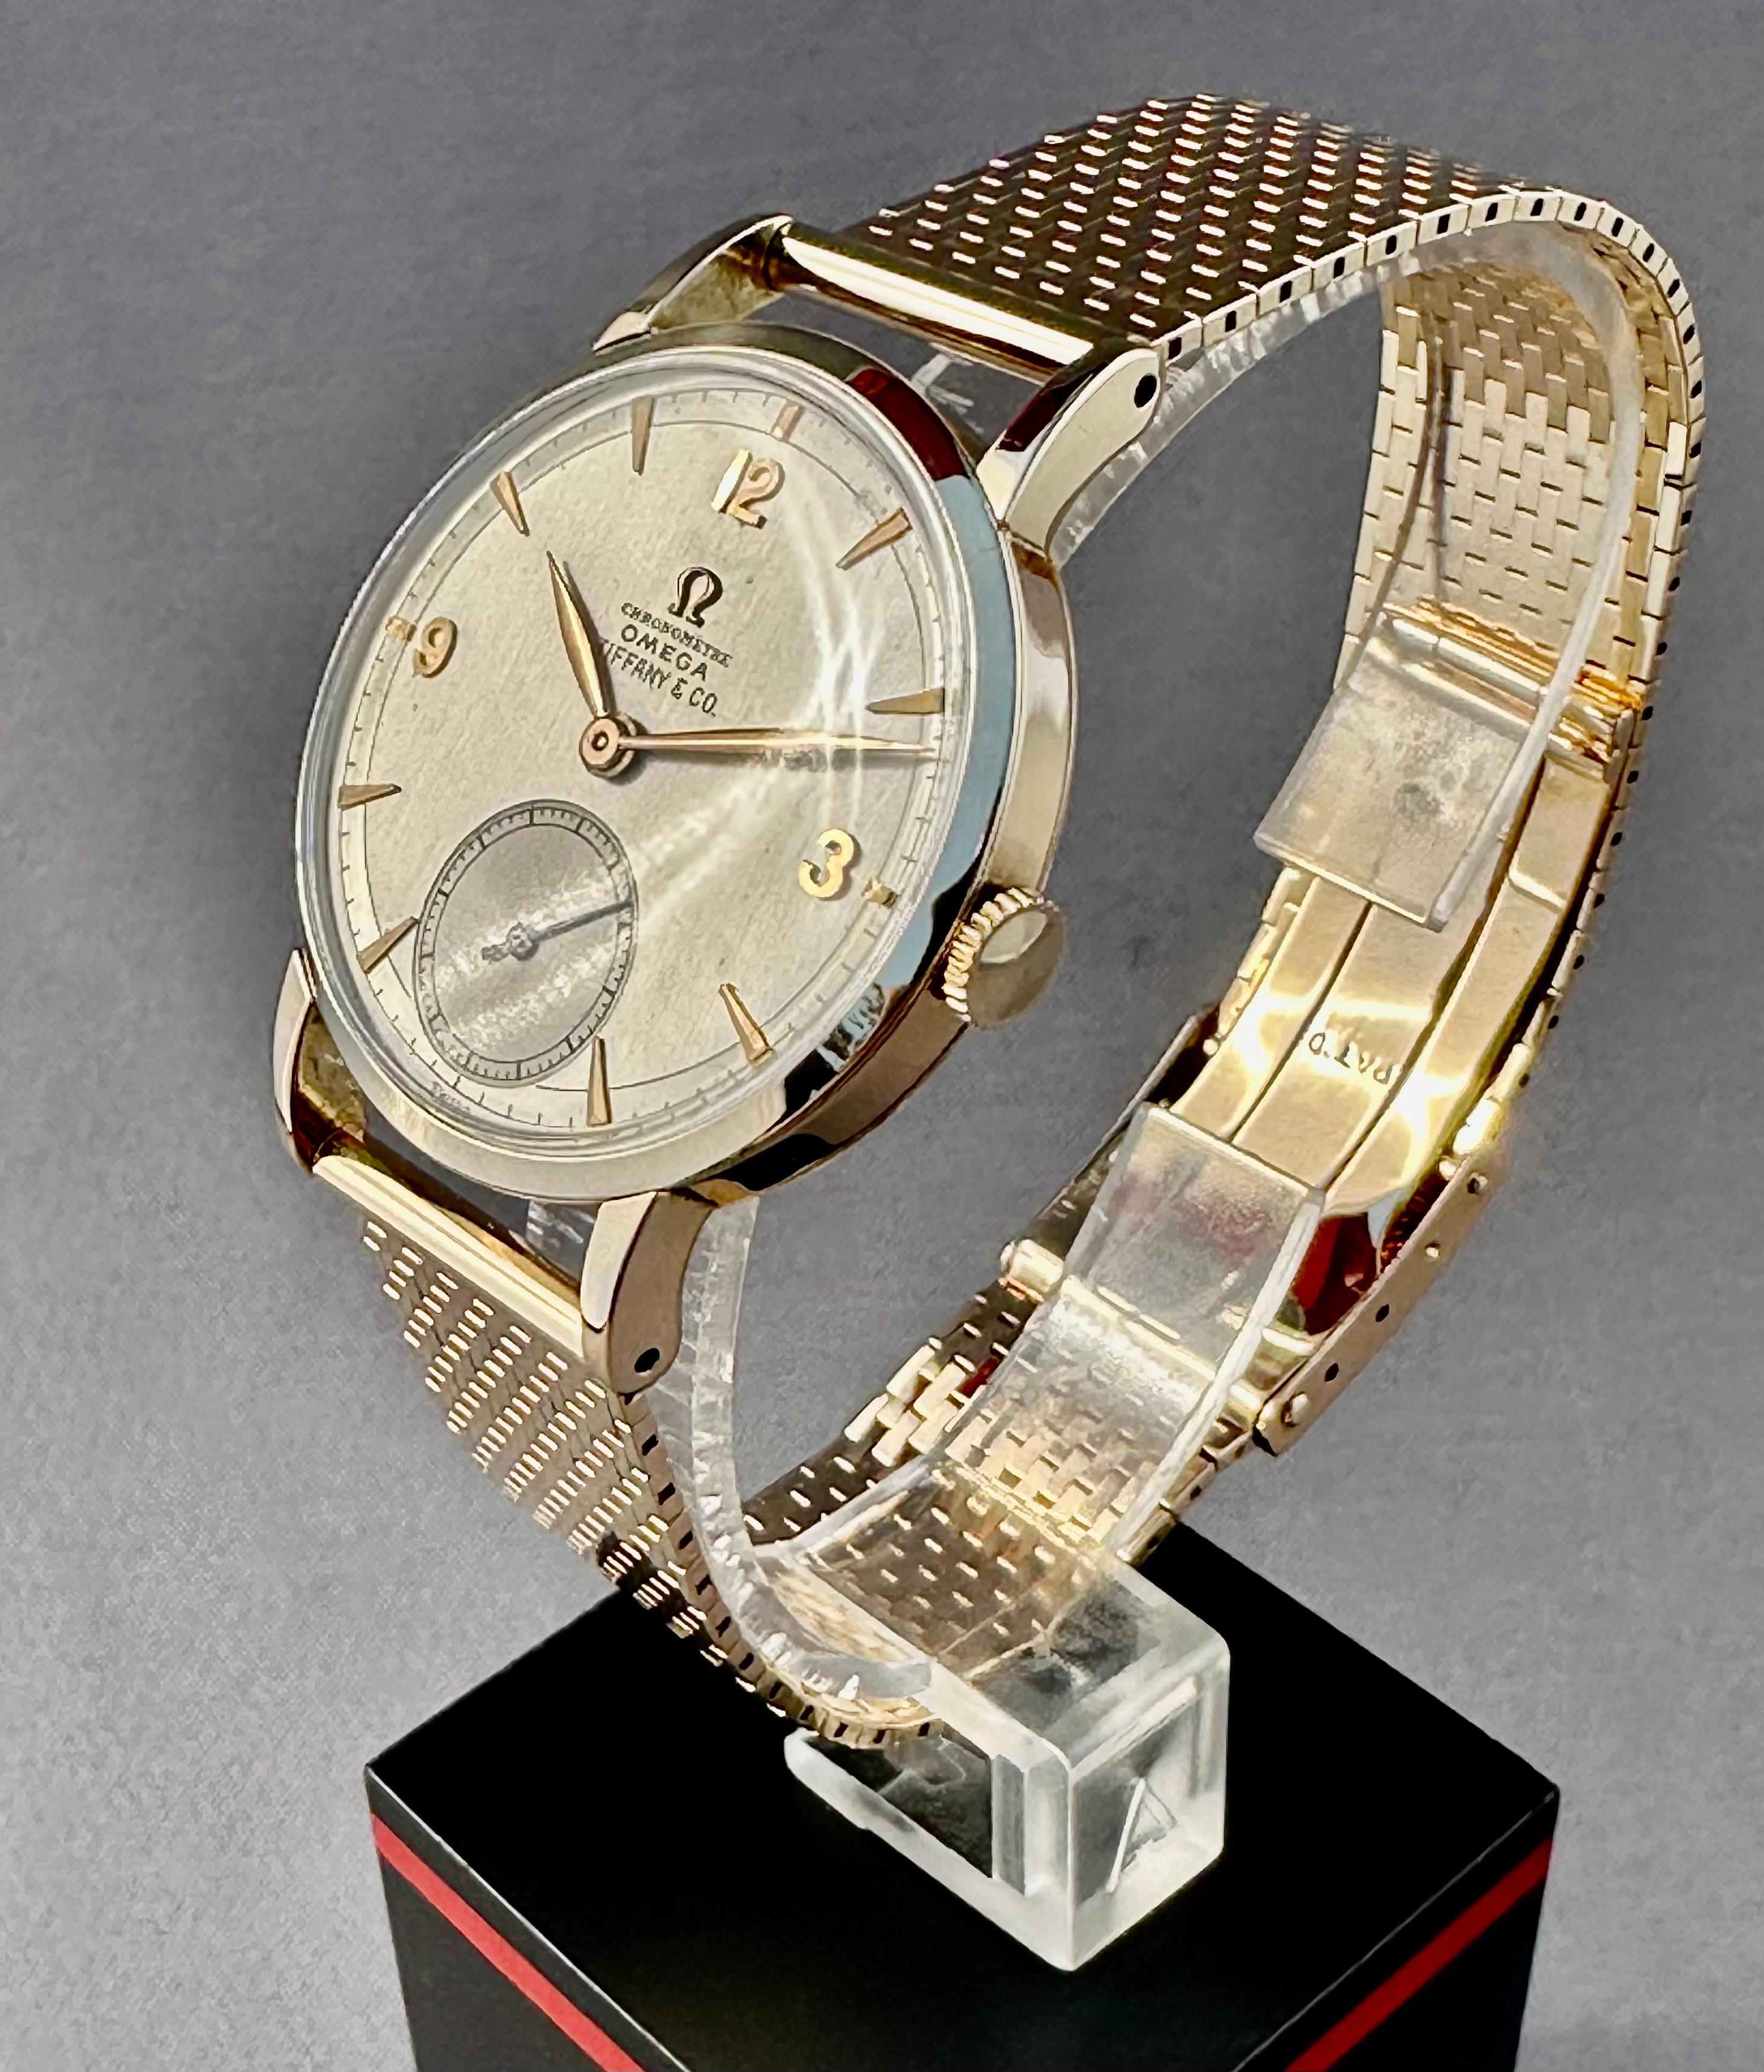 Hier ist ein fantastisches Stück Omega Geschichte aus den 1940er Jahren, einer der ersten Chronometer mit ref. 2364 in super alle ursprünglichen Zustand mit massiven 14K Band & Schnalle. Es wird immer seltener, ein Exemplar mit originalem